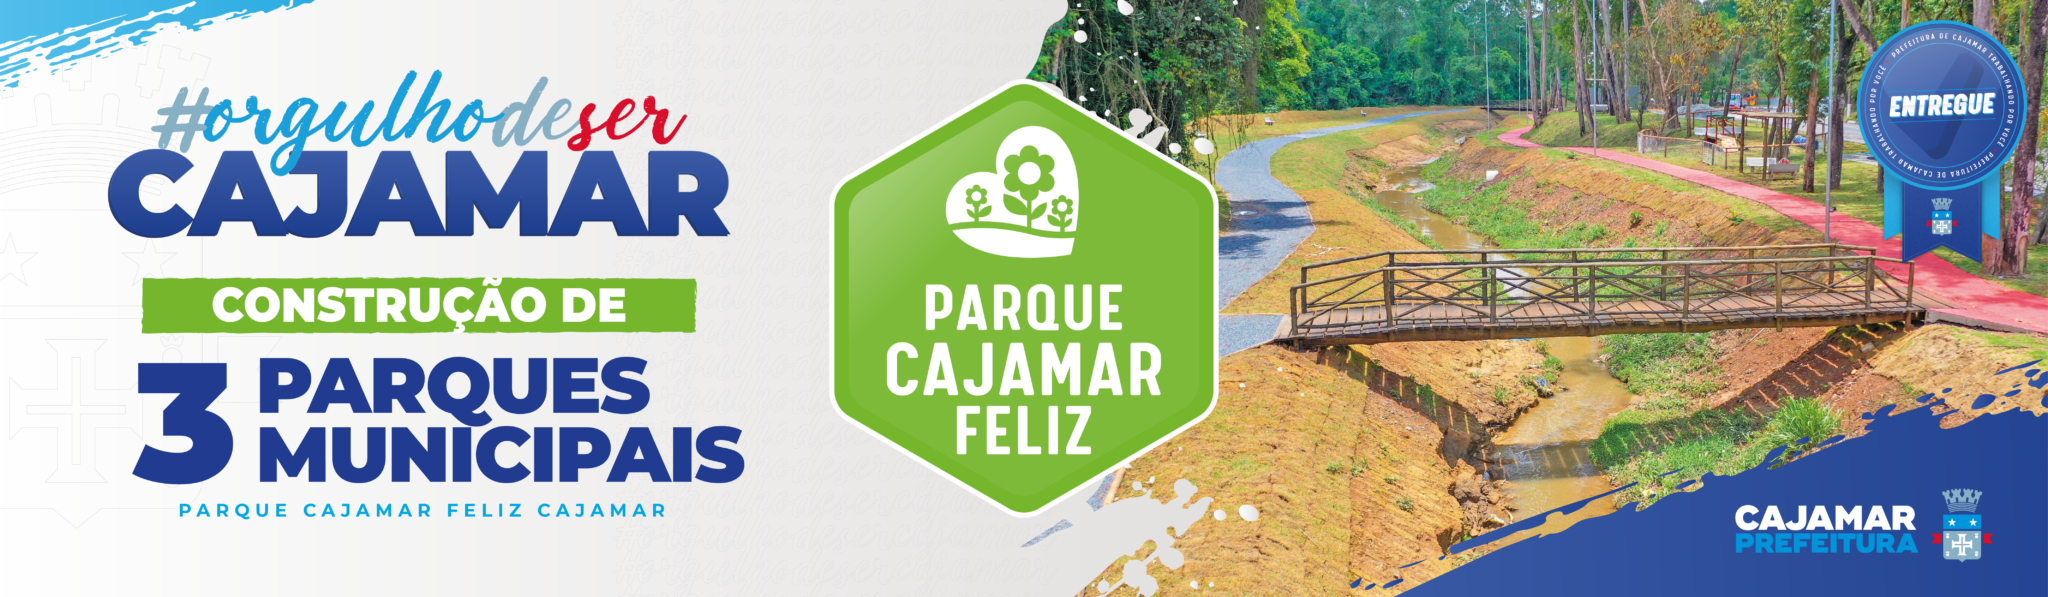 Parque Cajamar Feliz Centro